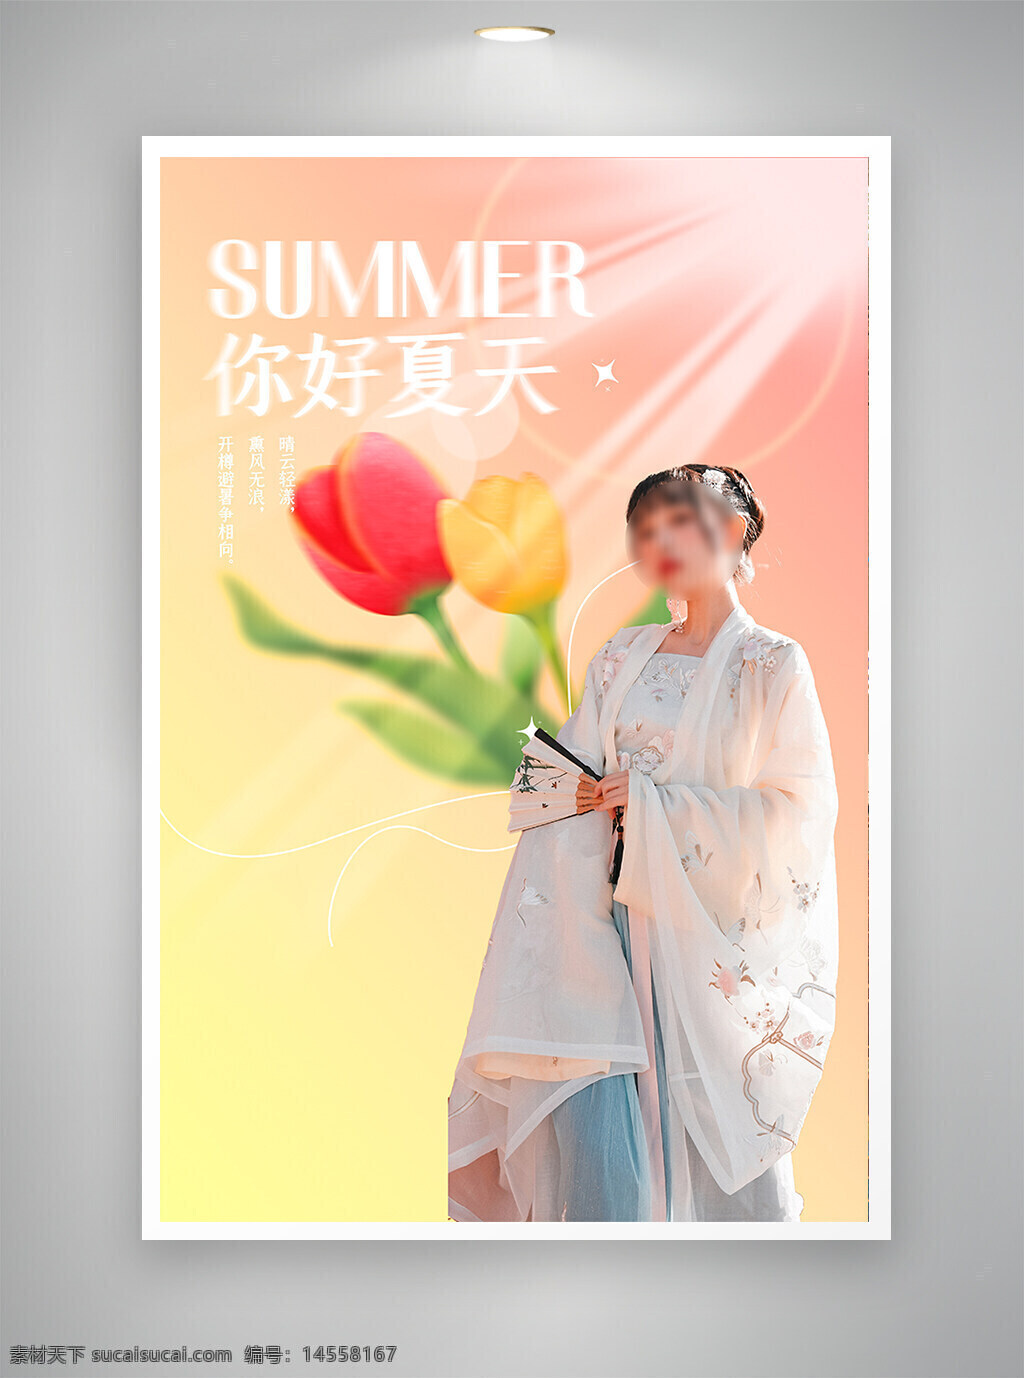 中国风海报 古风海报 促销海报 节日海报 夏天海报